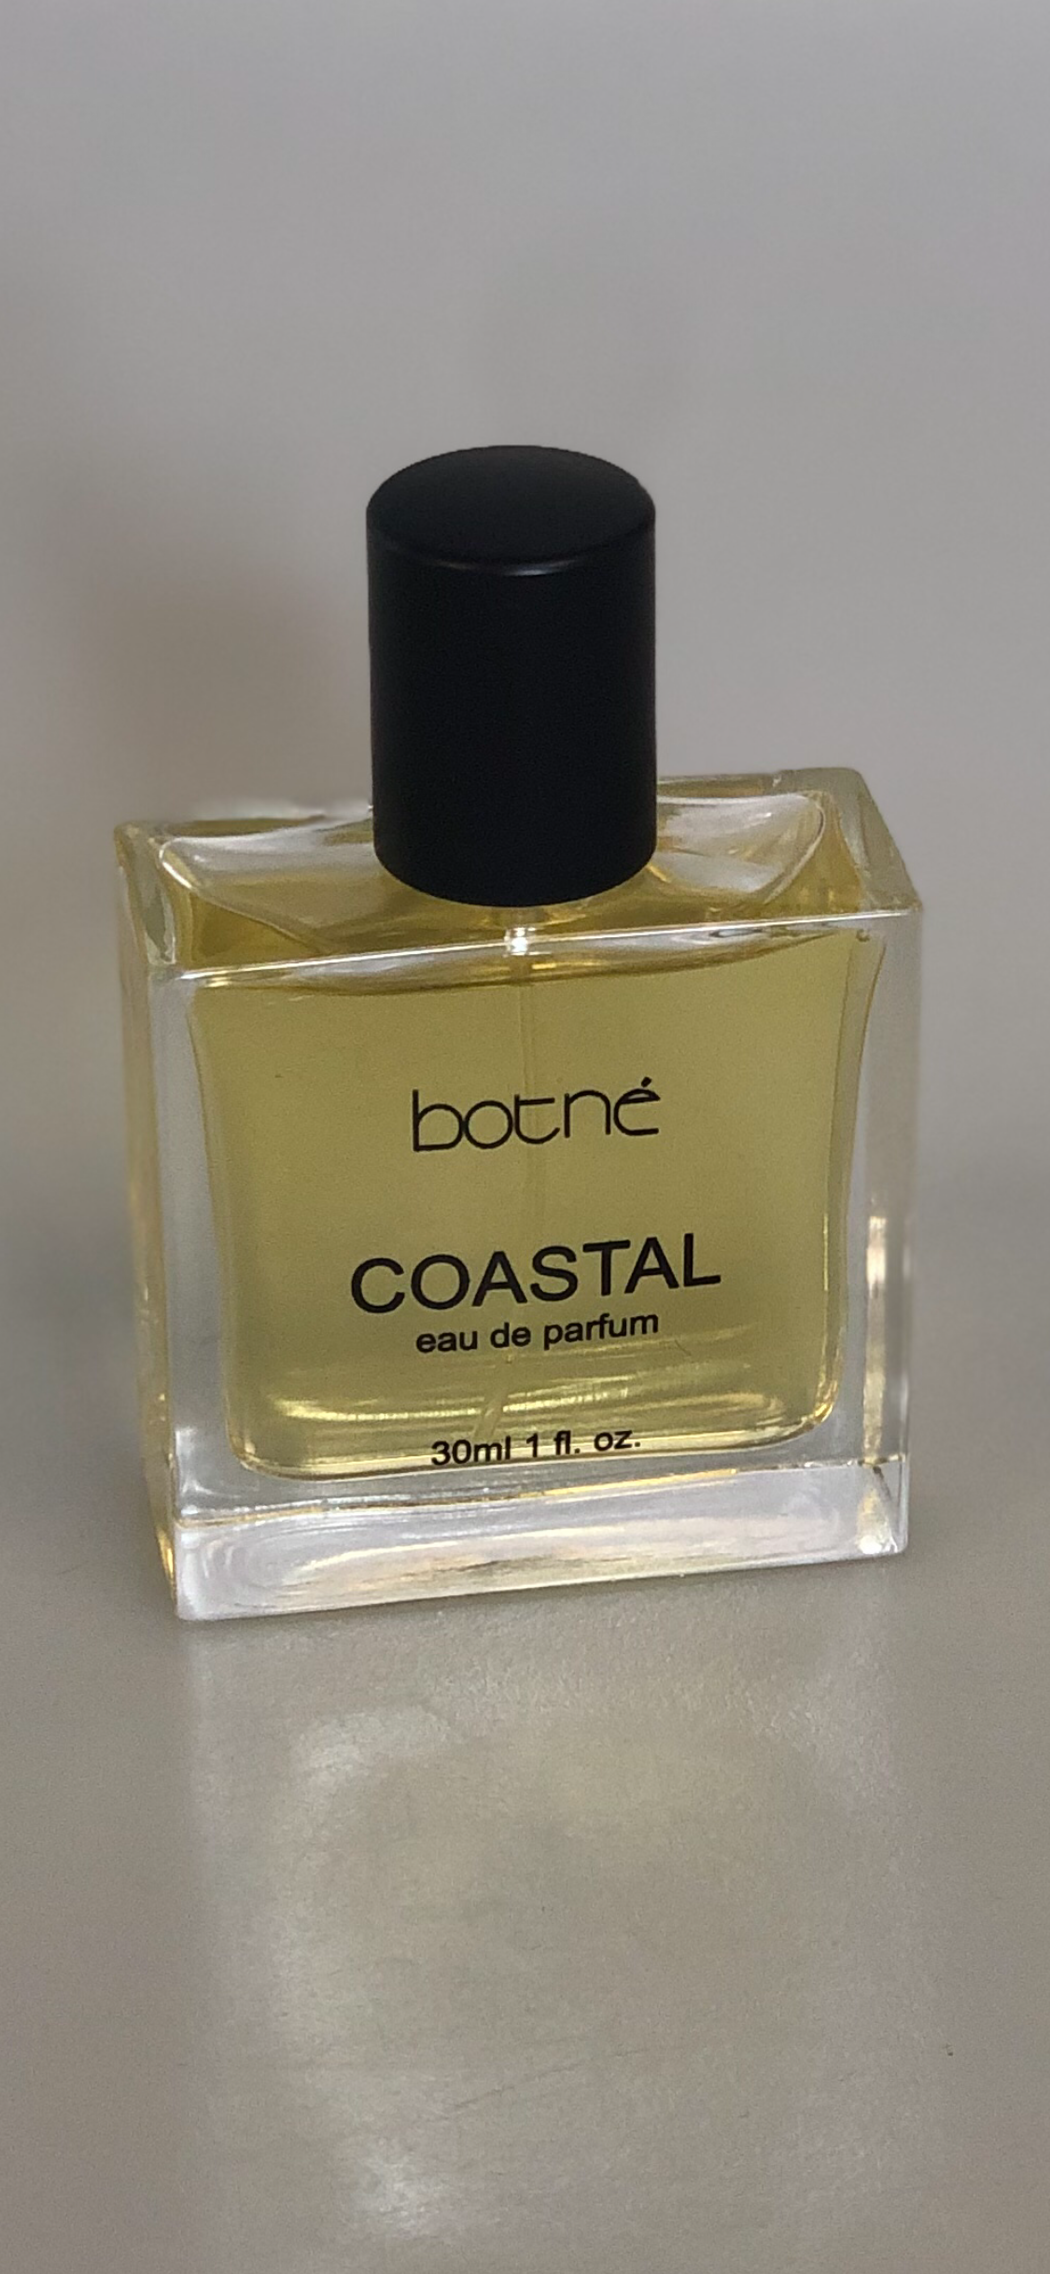 Coastal eu de parfum